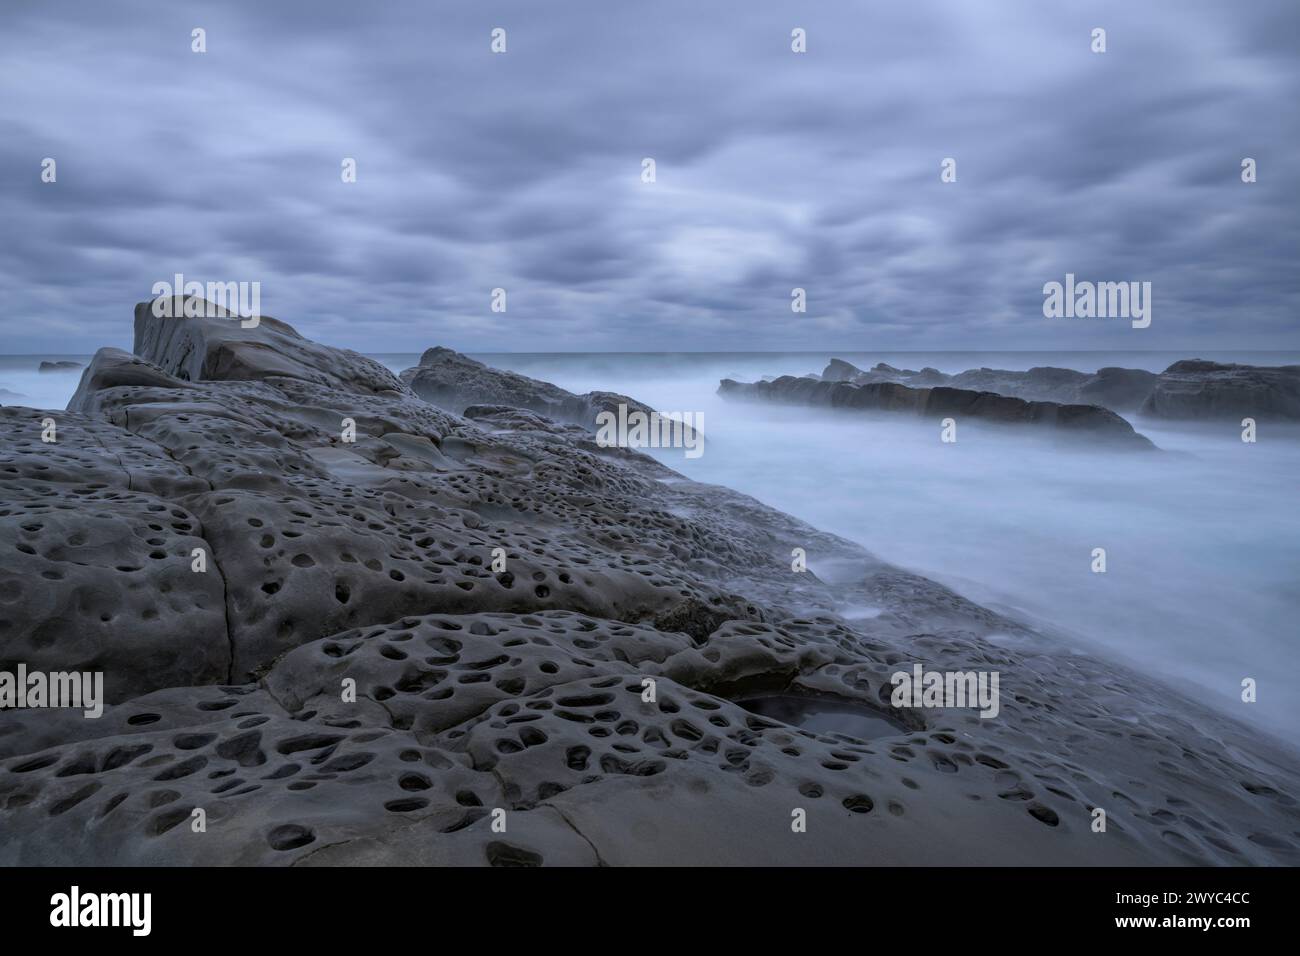 Atmosfera mistica con rocce lisce e intemperie su una costa frastagliata, sotto un cielo coperto Foto Stock